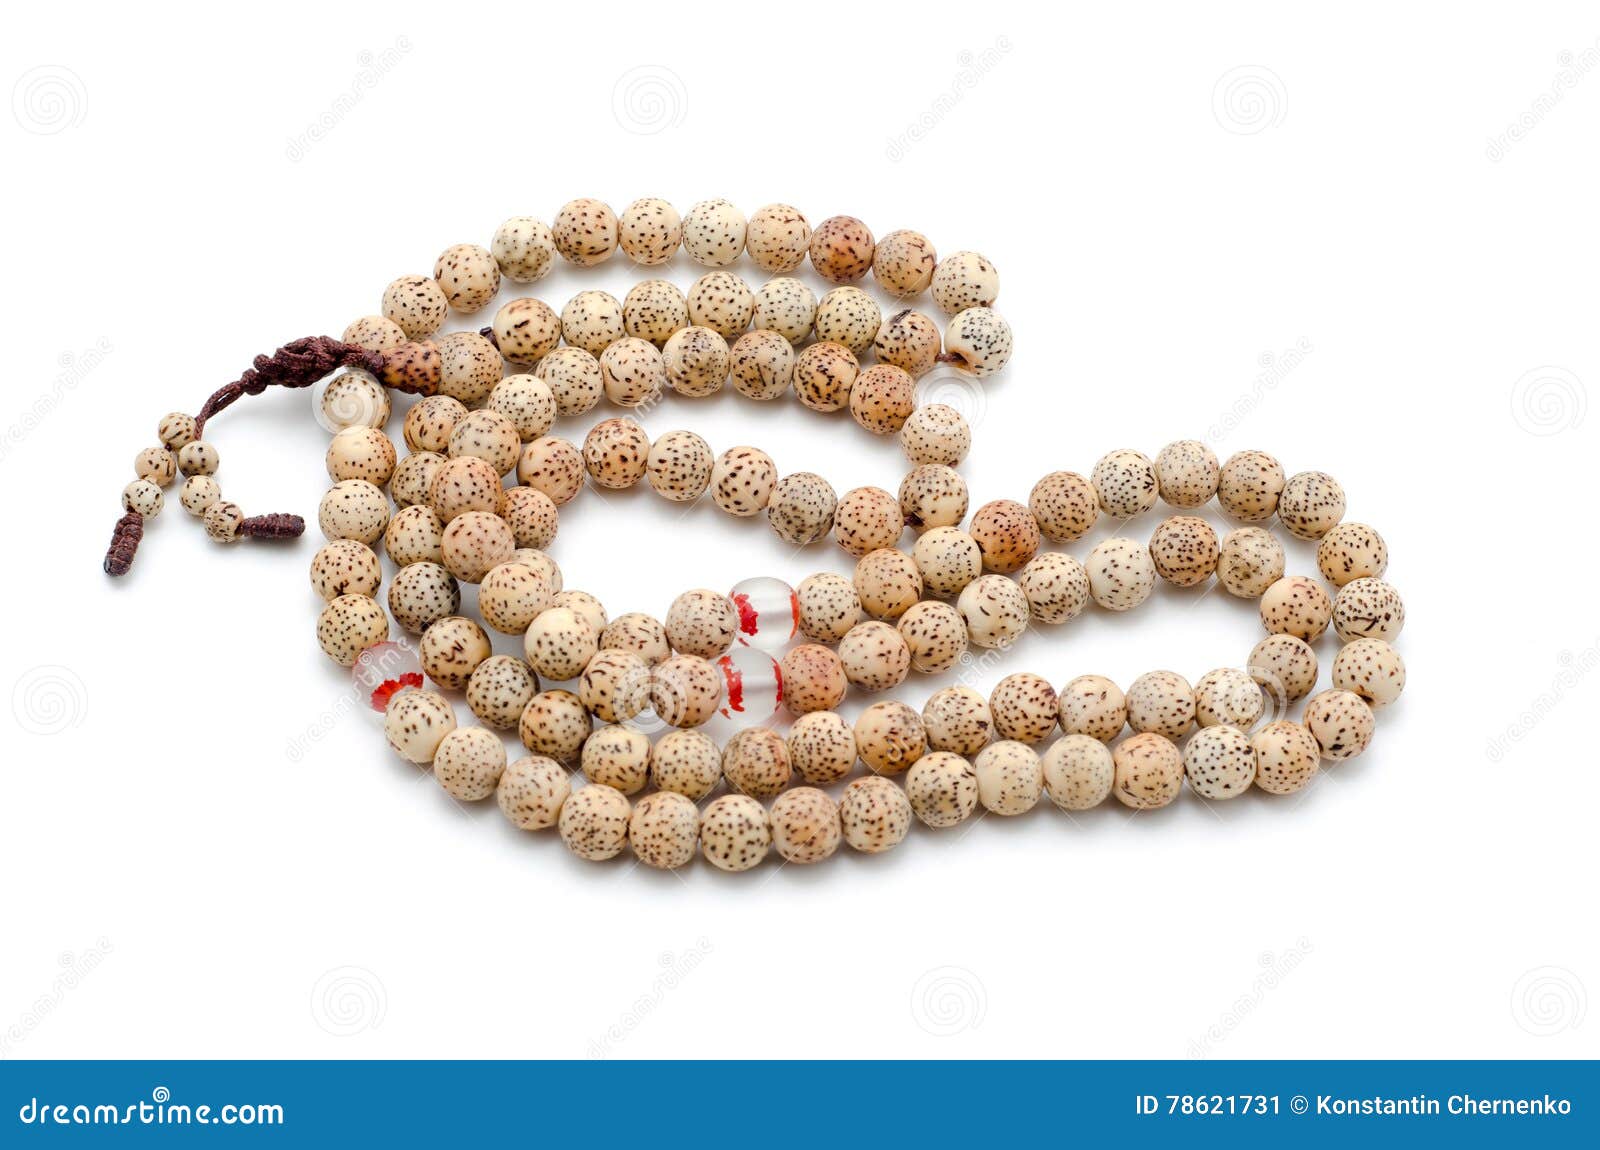 Buddhist or Hindu Prayer Beads Isolated on White. Stock Image